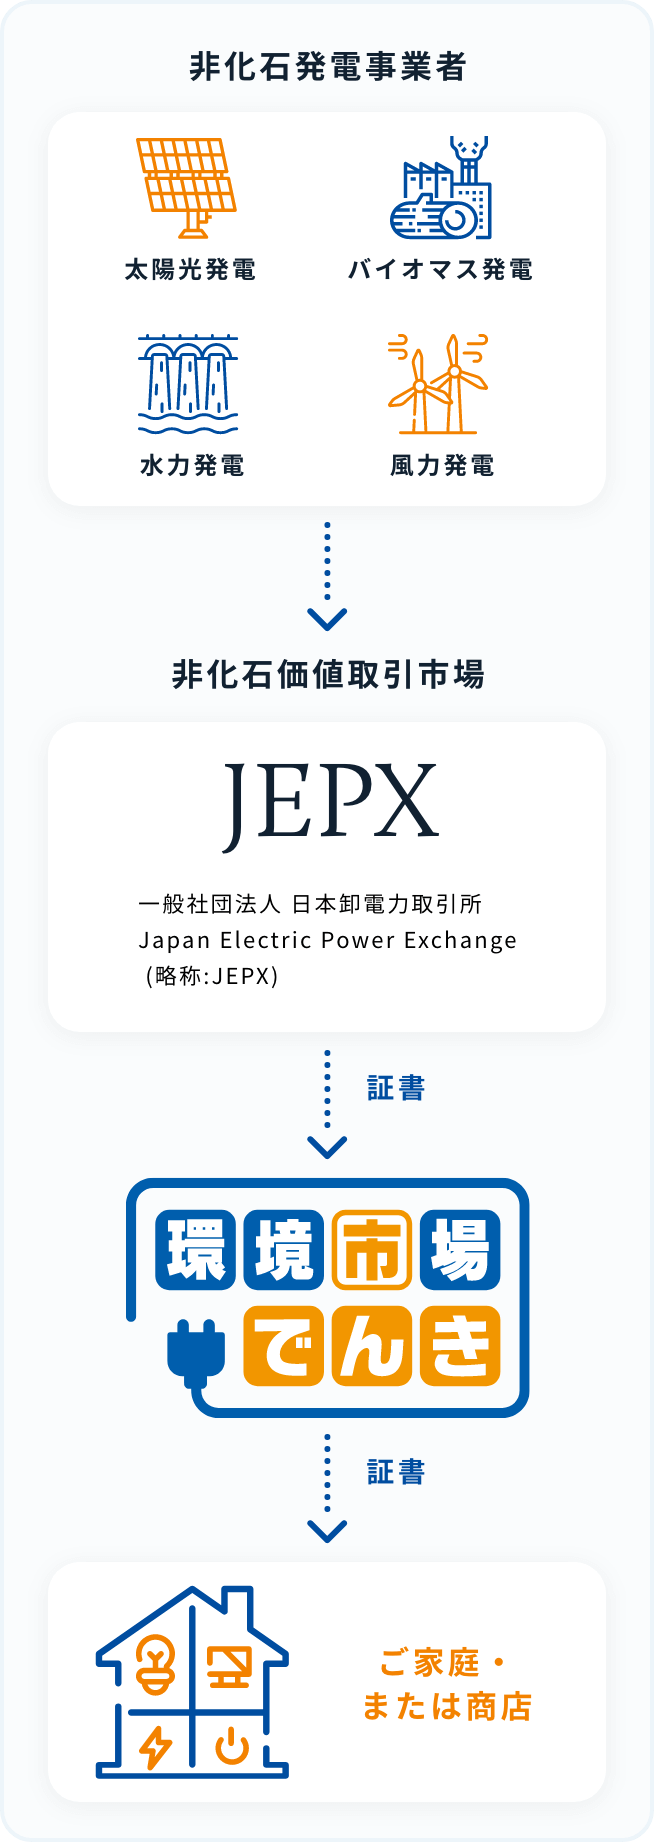 非化石発電事業者 太陽光発電 バイオマス発電 水力発電 風力発電 非化石価値取引市場 JEPX 一般社団法人 日本卸電力取引所Japan Electric Power Exchange (略称:JEPX)証書 環境市場でんき 証書 ご家庭・または商店